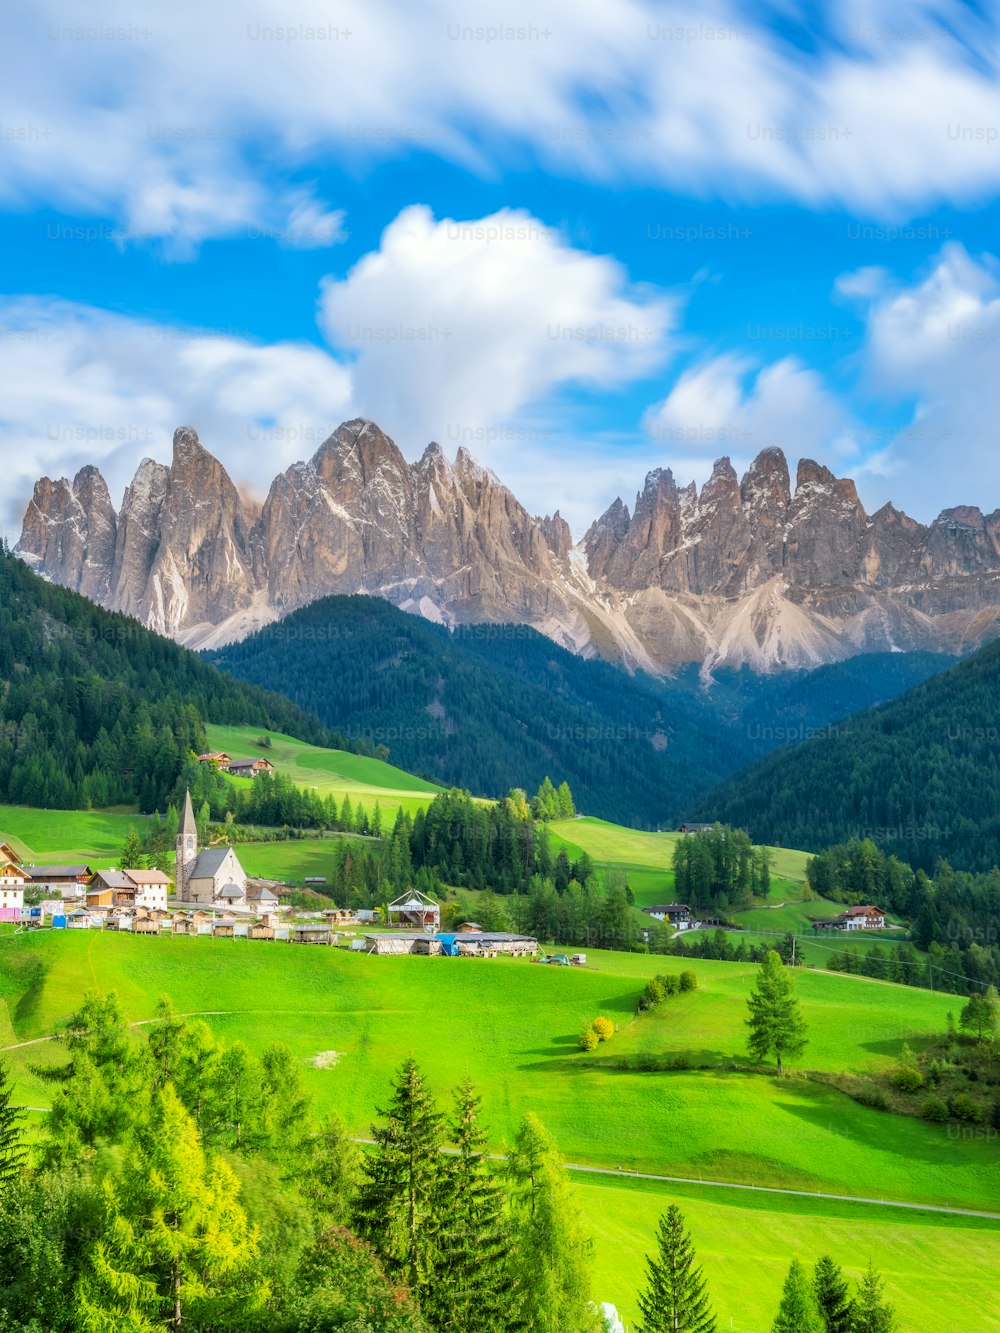 Paysage des Dolomites en Italie à Santa Maddalena ou au village de Sainte-Madeleine avec le groupe des Dolomites de Geisler ou d’Odle. Le magnifique paysage de montagne attire les touristes à se rendre dans les Dolomites, dans le nord de l’Italie.